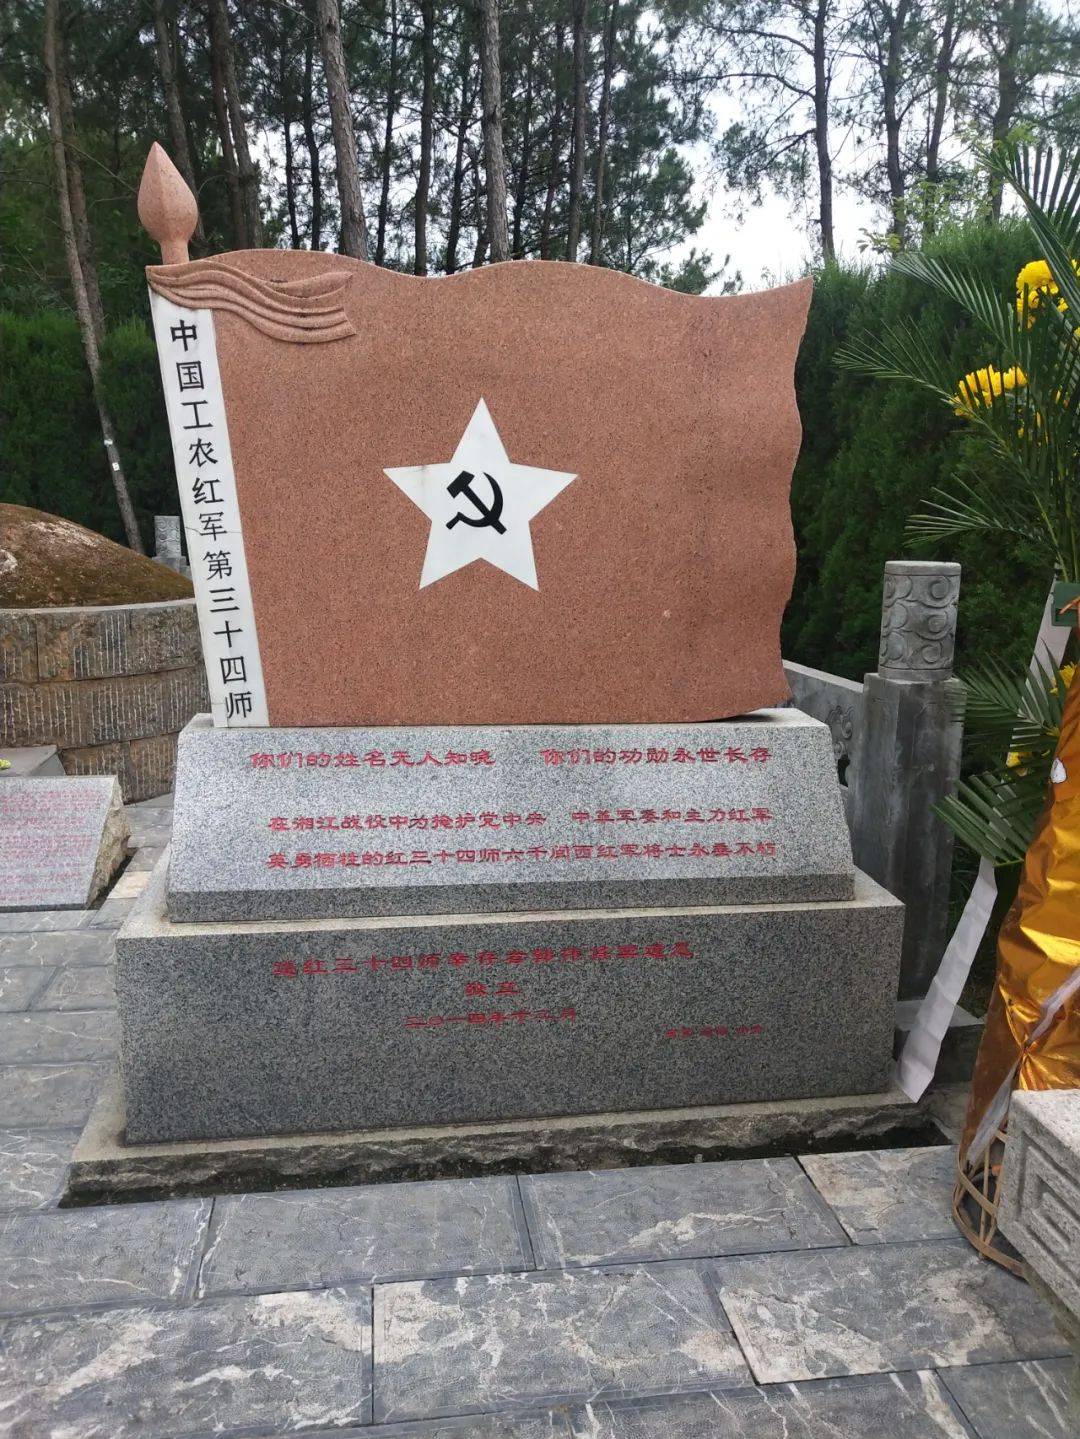 原创湘江战役牺牲的陈树湘师长,非常悲壮,你去凭吊过吗?